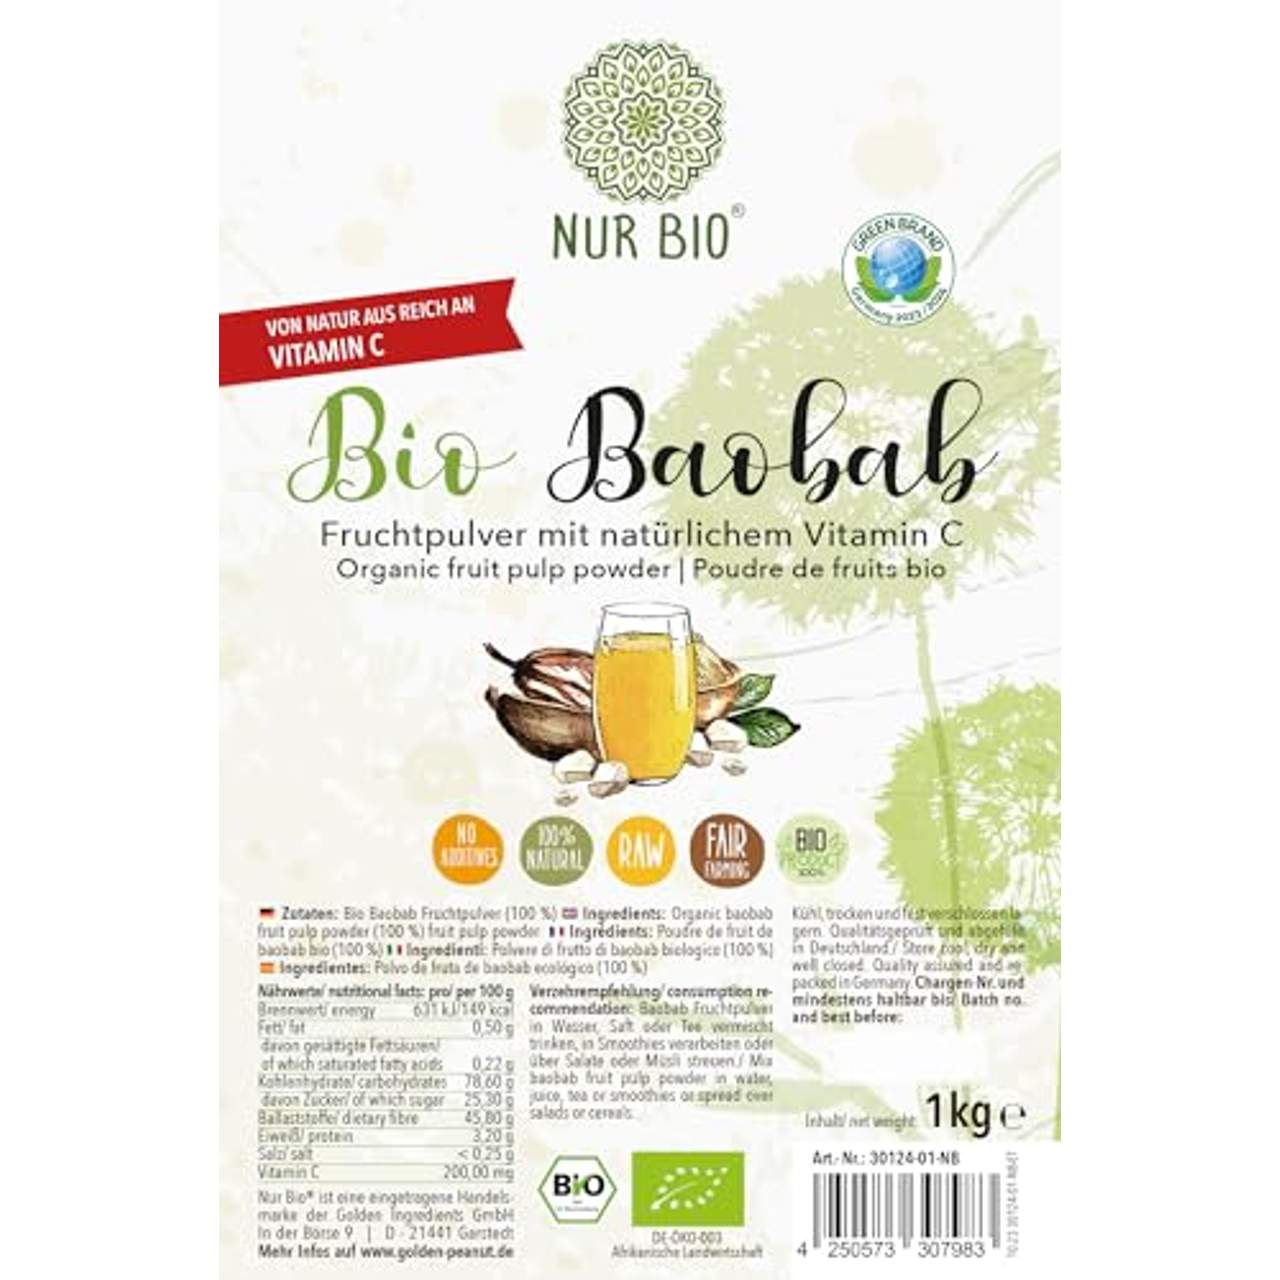 NurBio Baobab Fruchtpulver 1 kg